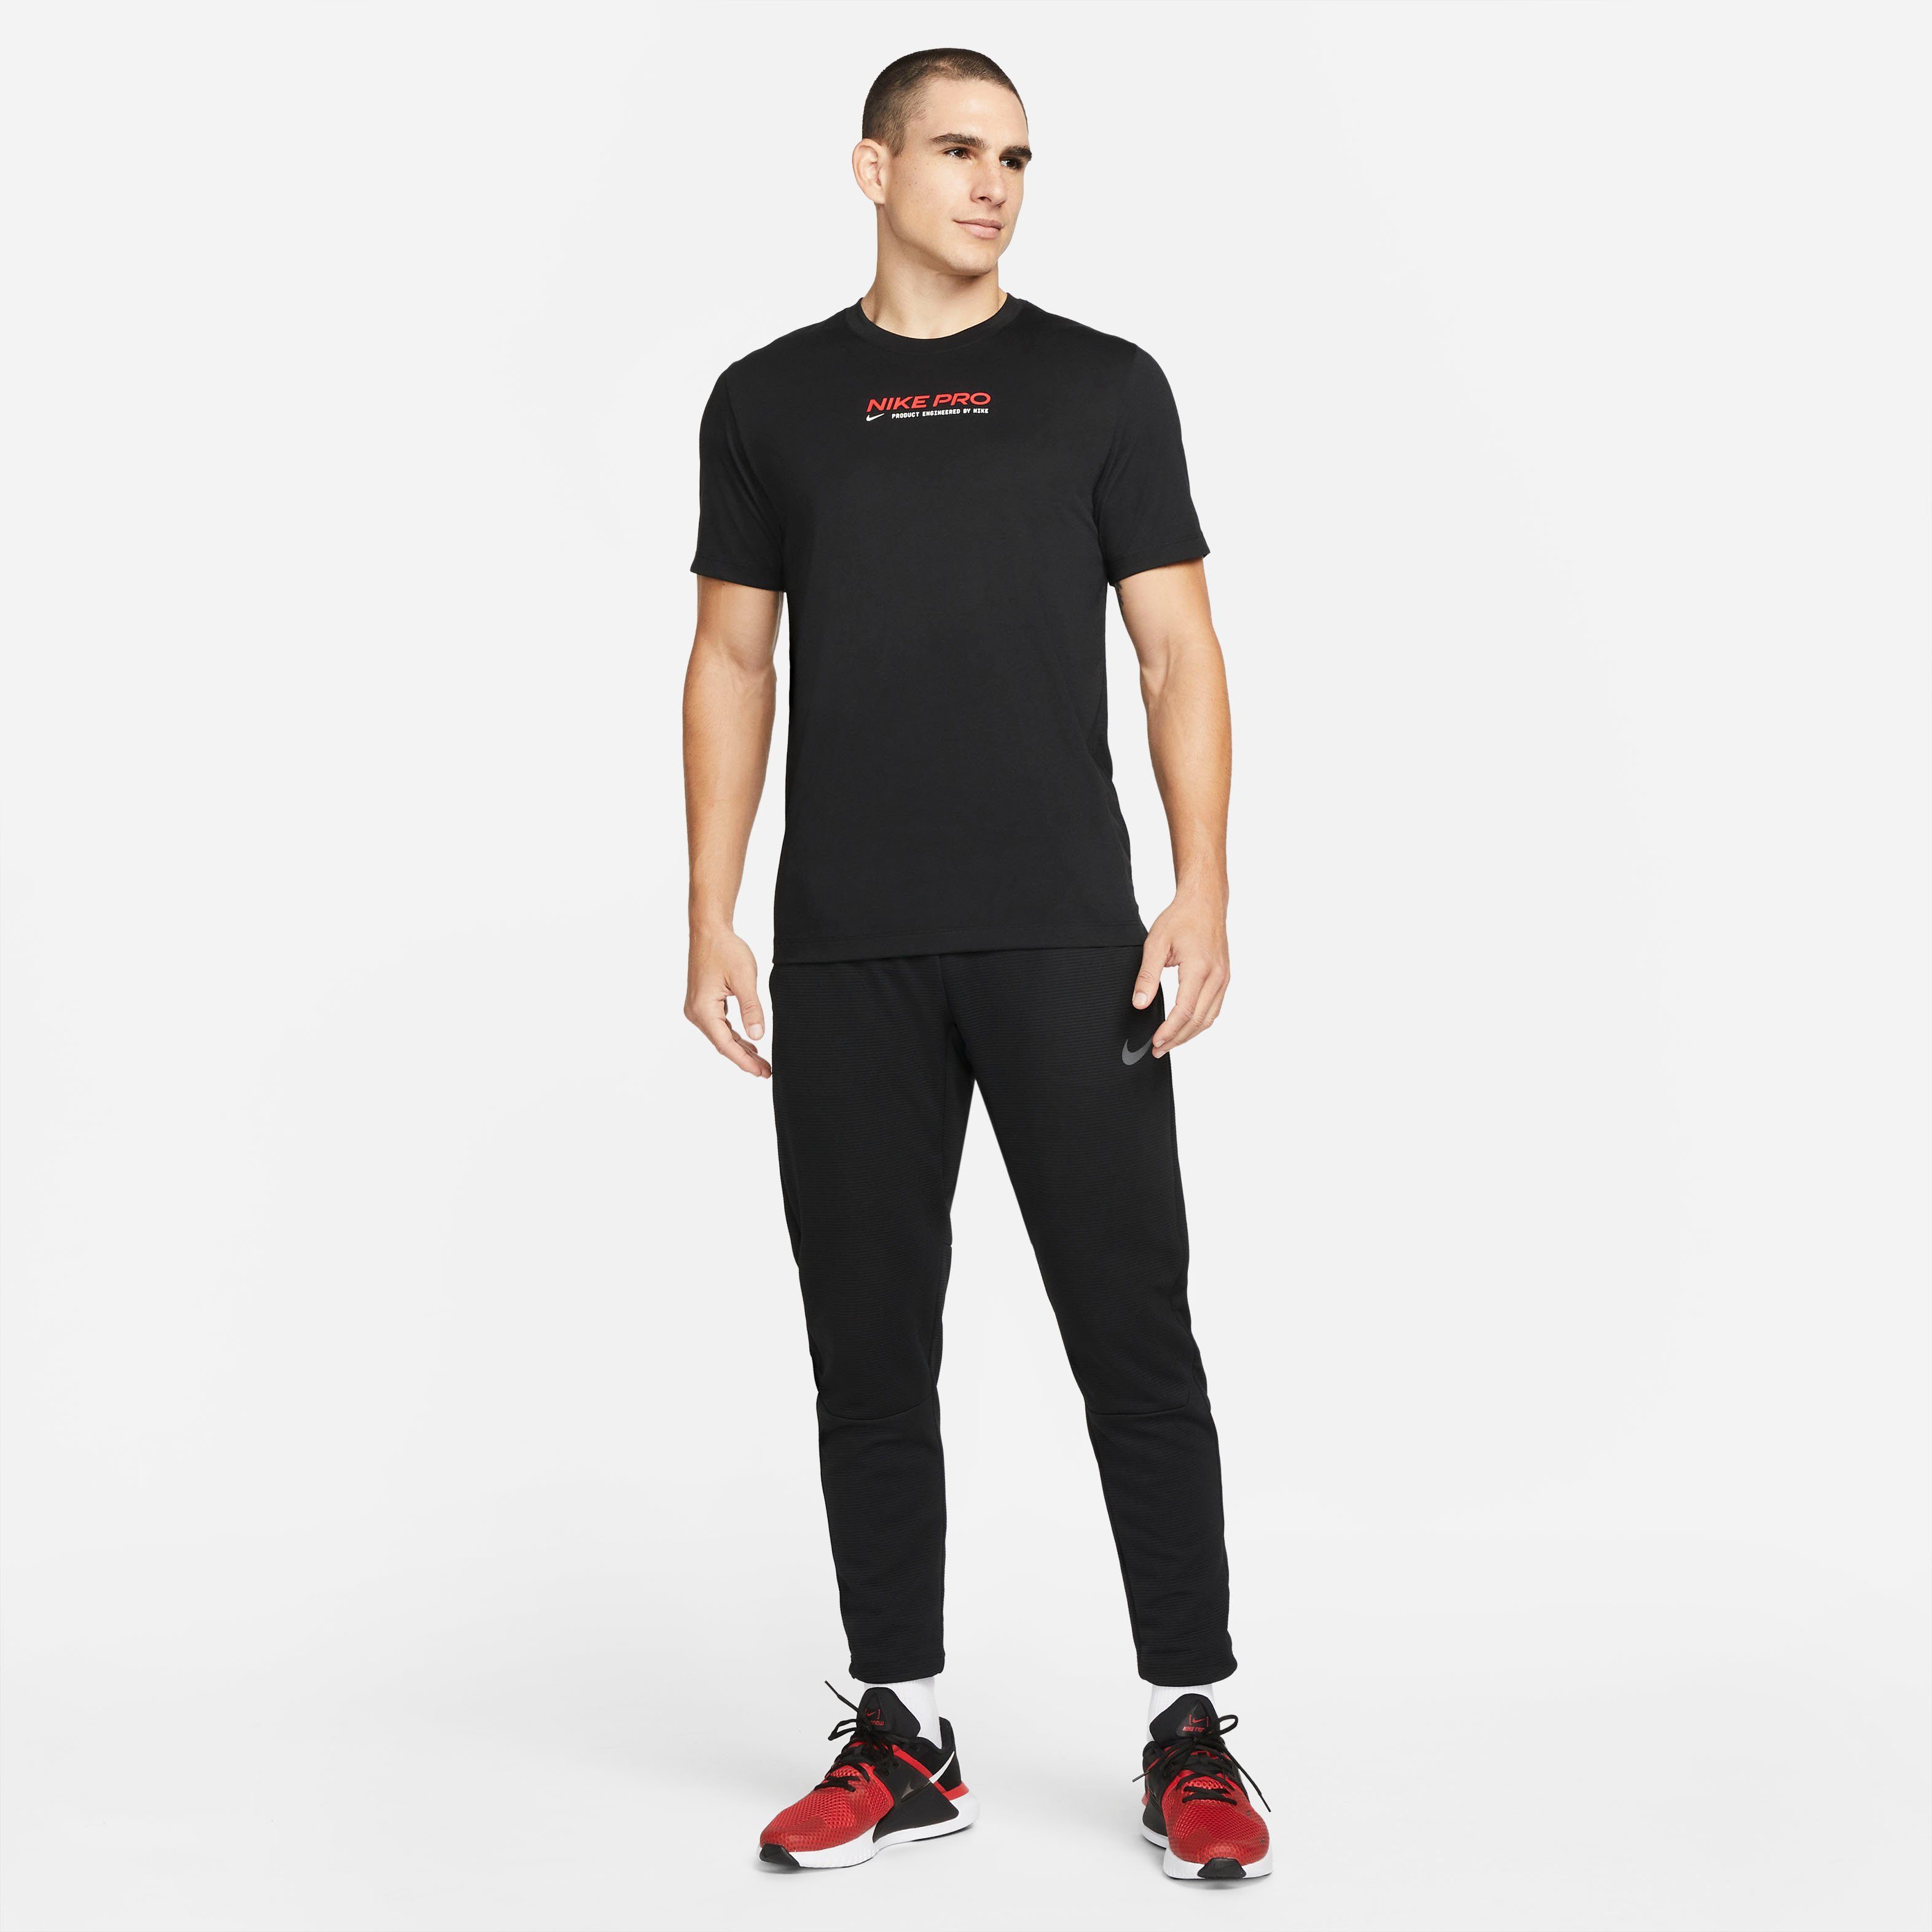 Pro Trainingsshirt Men's T-Shirt Dri-FIT Training BLACK Nike